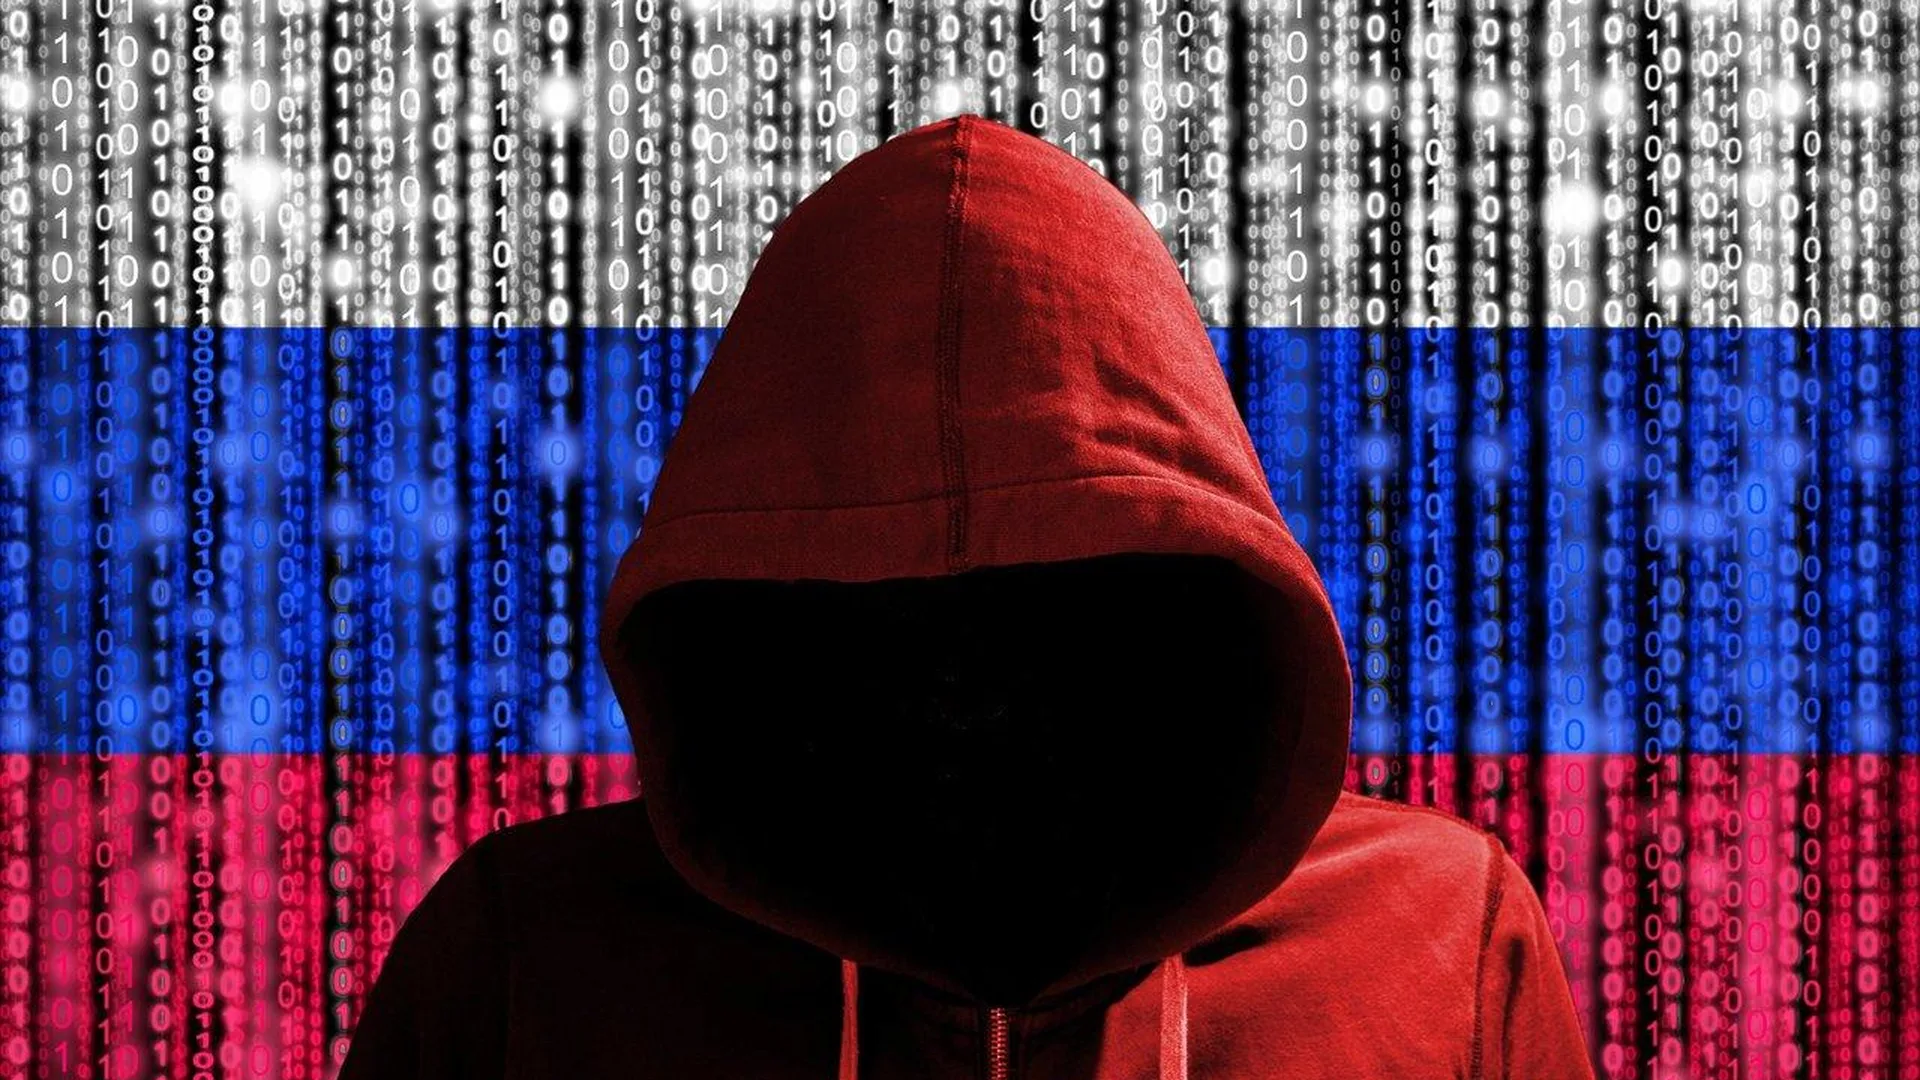 Российские хакеры взломали 100 госсайтов Украины, разместив там поздравление Путина с 9 мая